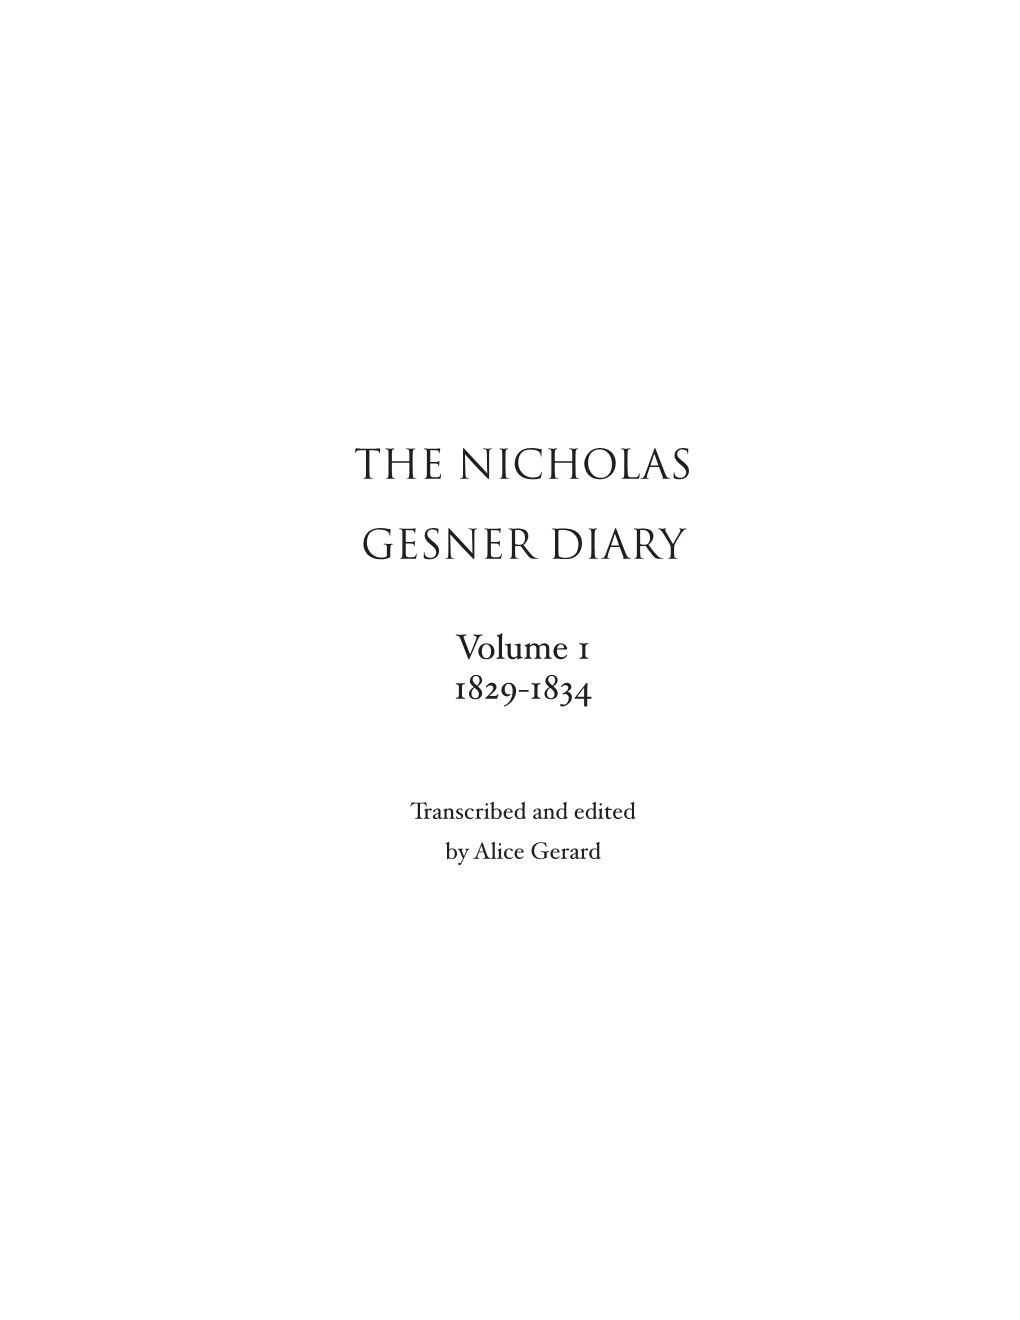 The Nicholas Gesner Diary